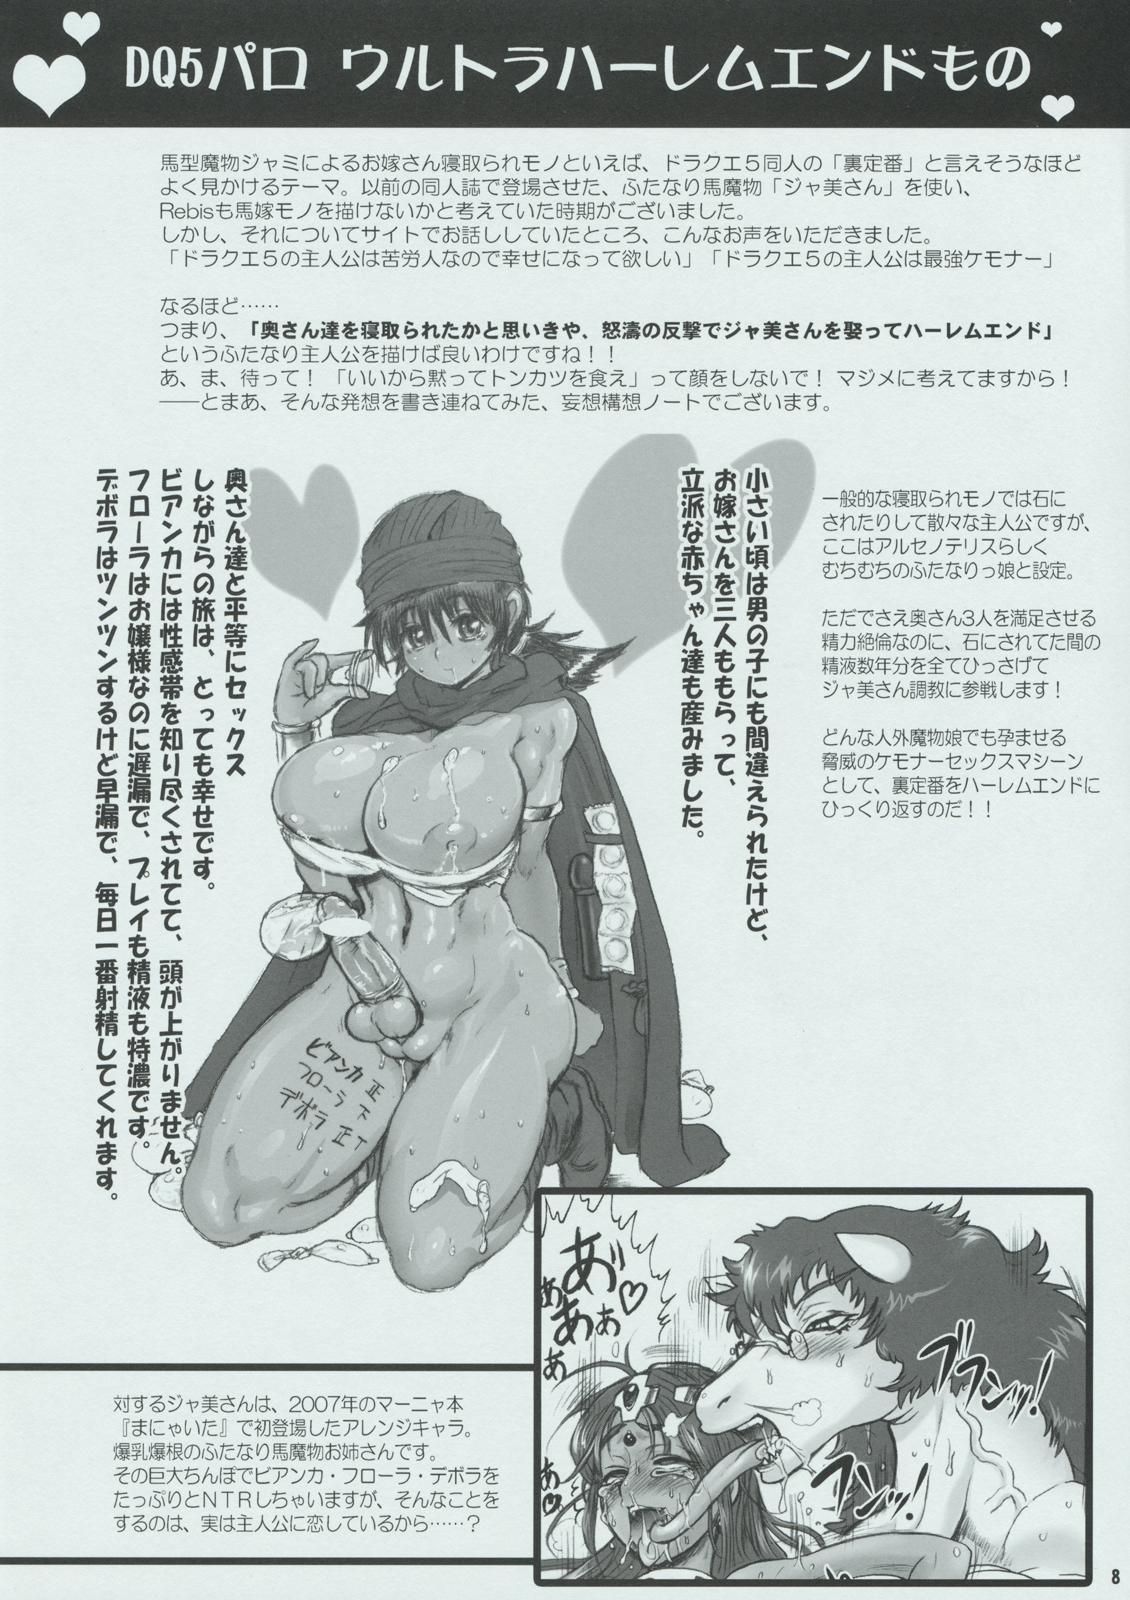 Solo (Futaket 05) [Arsenothelus (Rebis)] Arsenothelus Kousou (Mousou) Note (Dragon Quest, Street Fighter) - Street fighter Banho - Page 8